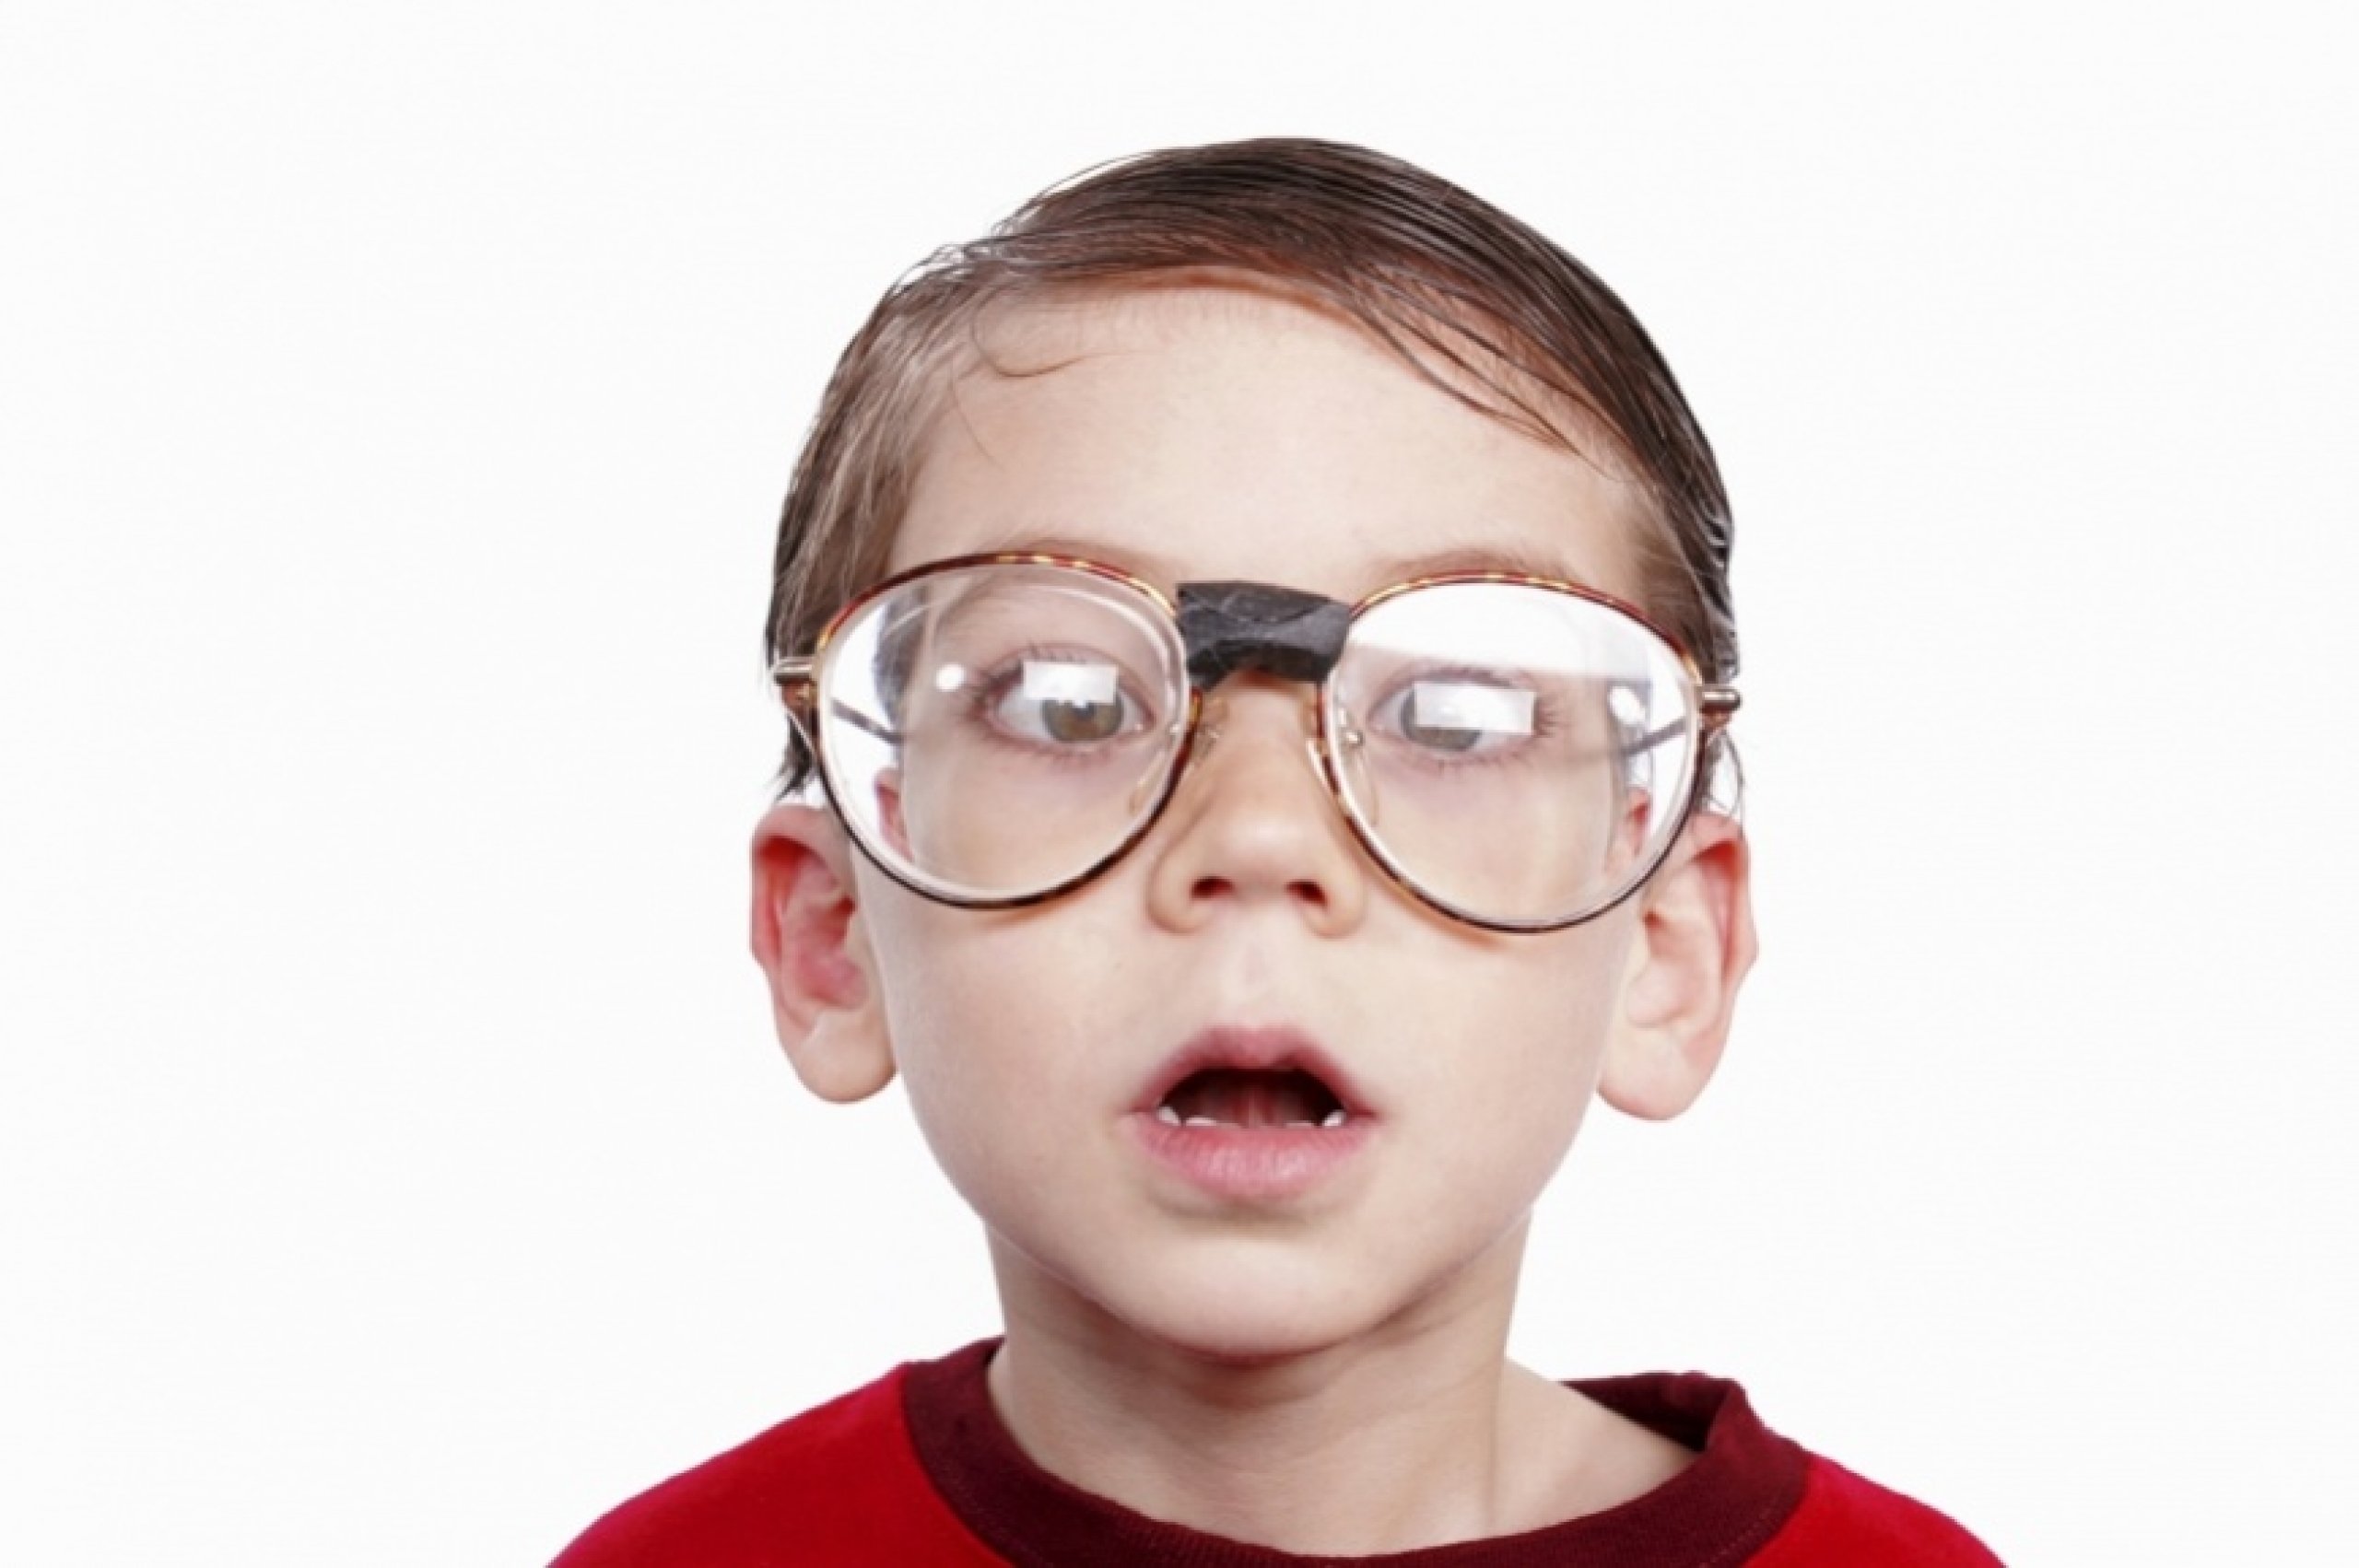 Зрение меньше 10. Дети в очках. Мальчик с очками. Детские очки для зрения. Дети в очках для зрения.